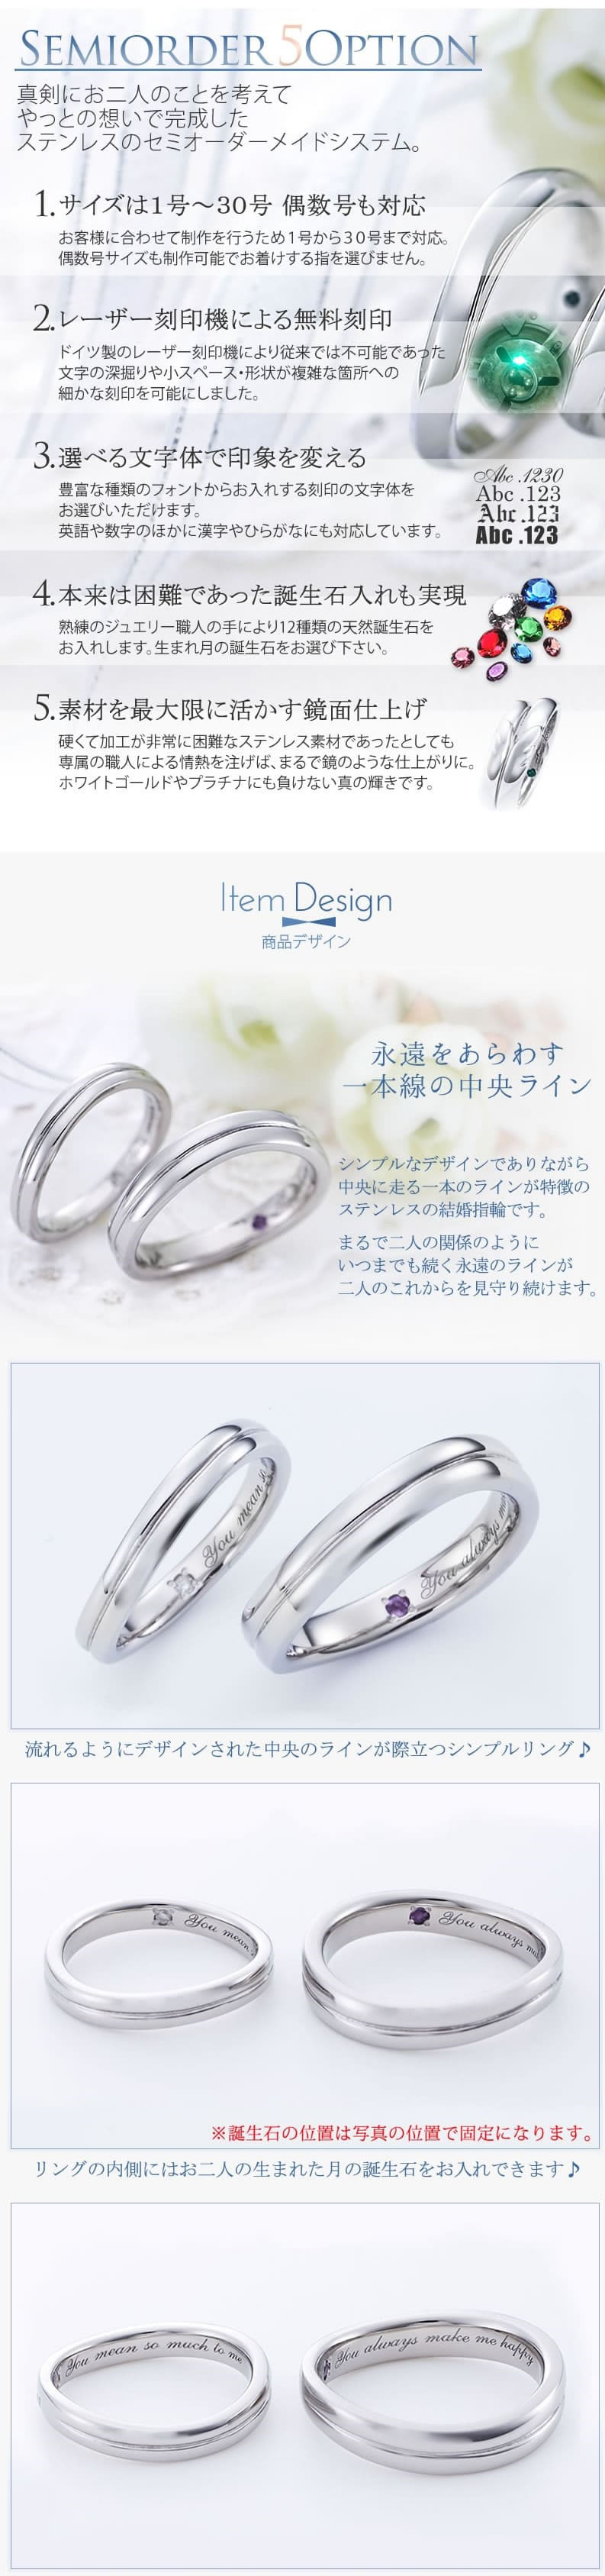 【結婚指輪】セミオーダーメイドステンレスリング ST107R-KS